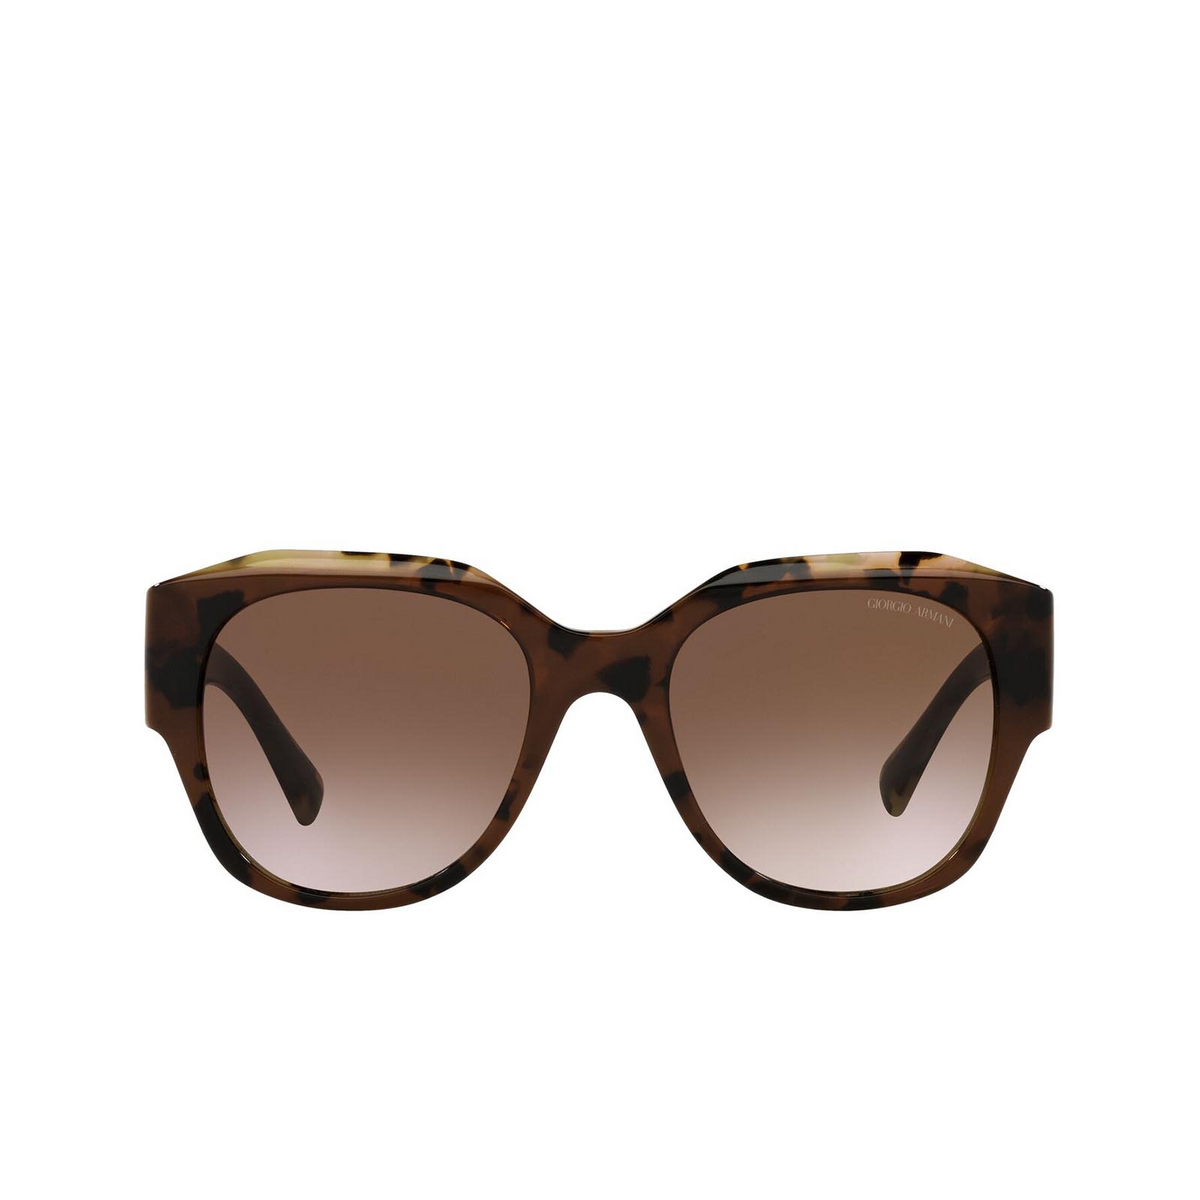 Giorgio Armani® Square Sunglasses: AR8140 color Brown Tortoise 586713 - front view.